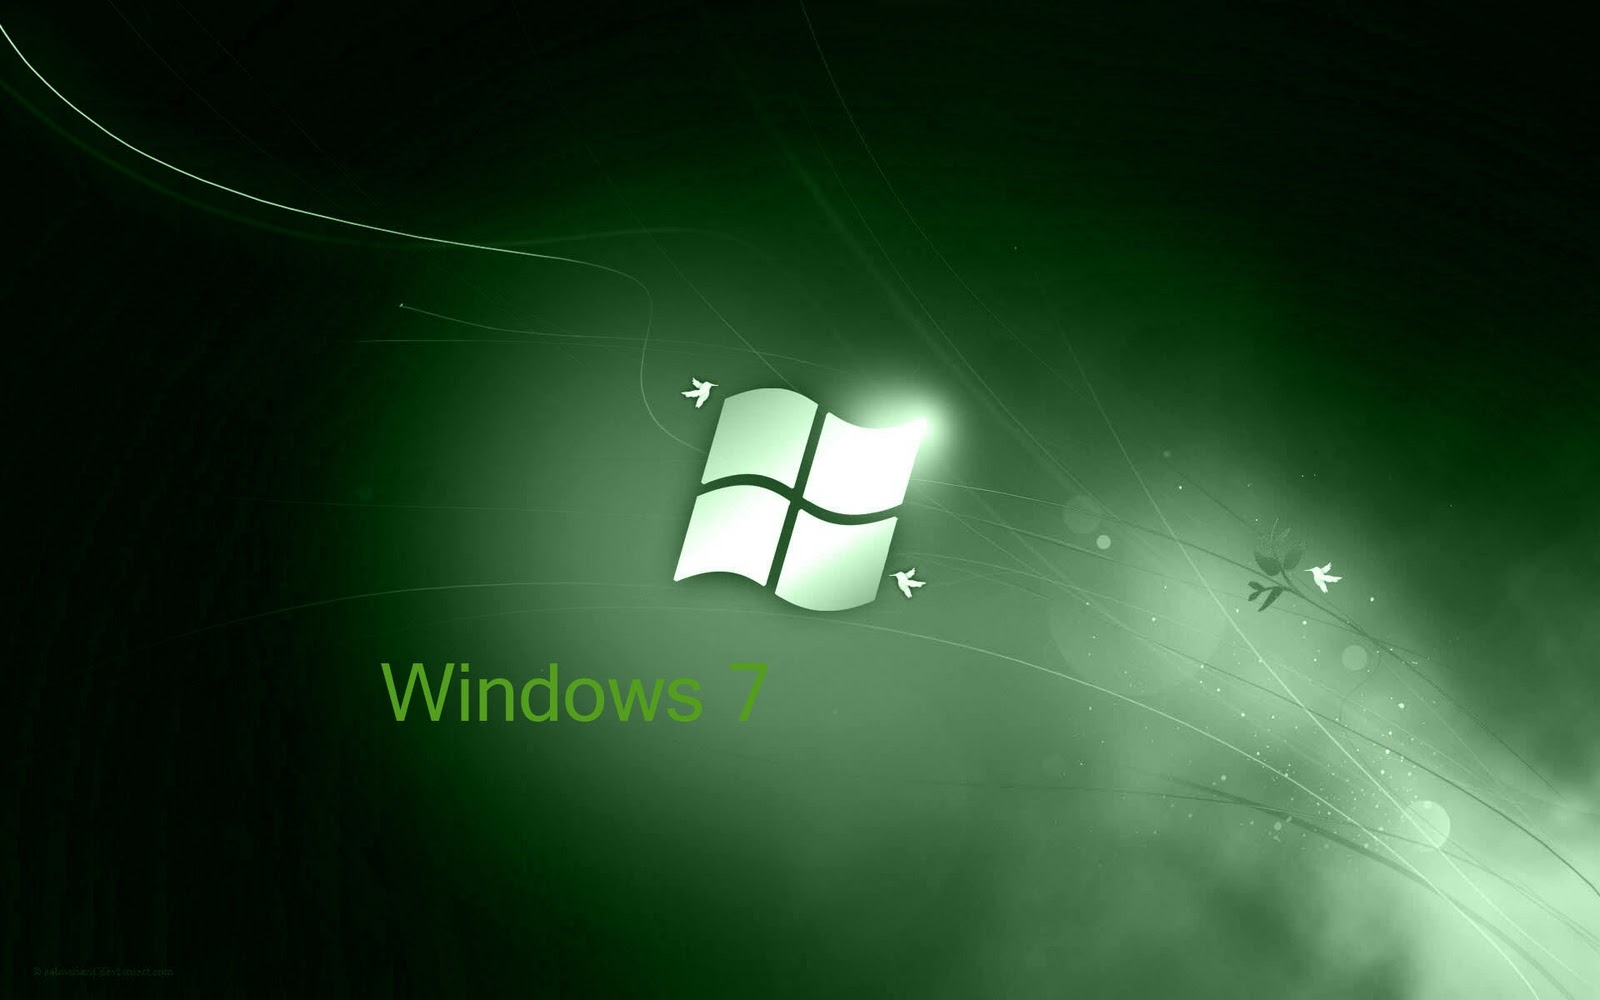 Tận dụng cơ hội để trang trí màn hình desktop Windows 7 của bạn với hình nền màu xám trắng miễn phí kết hợp với sắc xanh lá tươi mát. Thiết kế đơn giản và tinh tế giúp tạo nên một không gian làm việc thú vị và sáng tạo. Tải xuống ngay và trải nghiệm hình nền desktop độc đáo này.